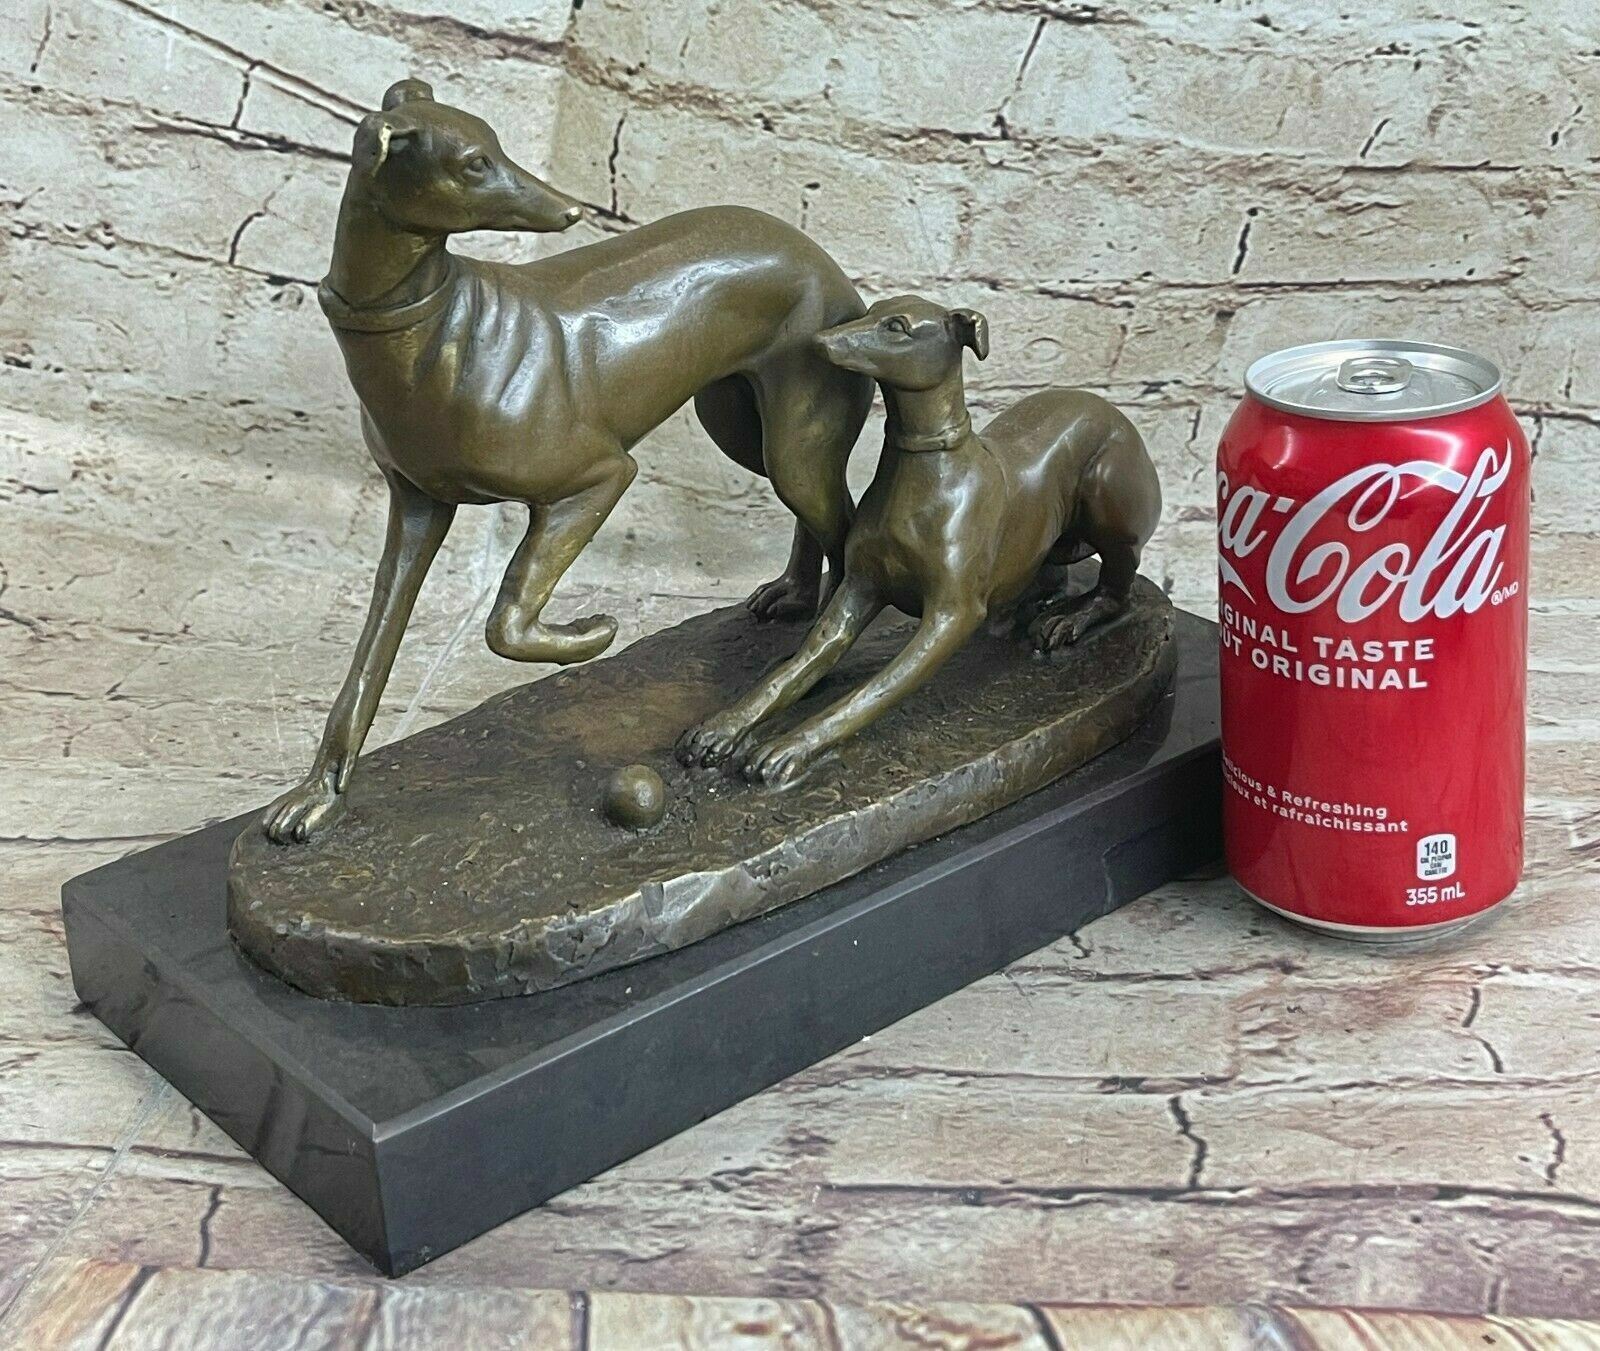 MENE RARE bronze brass Greyhound Whippet Dog statue unique vintage sculpture ART